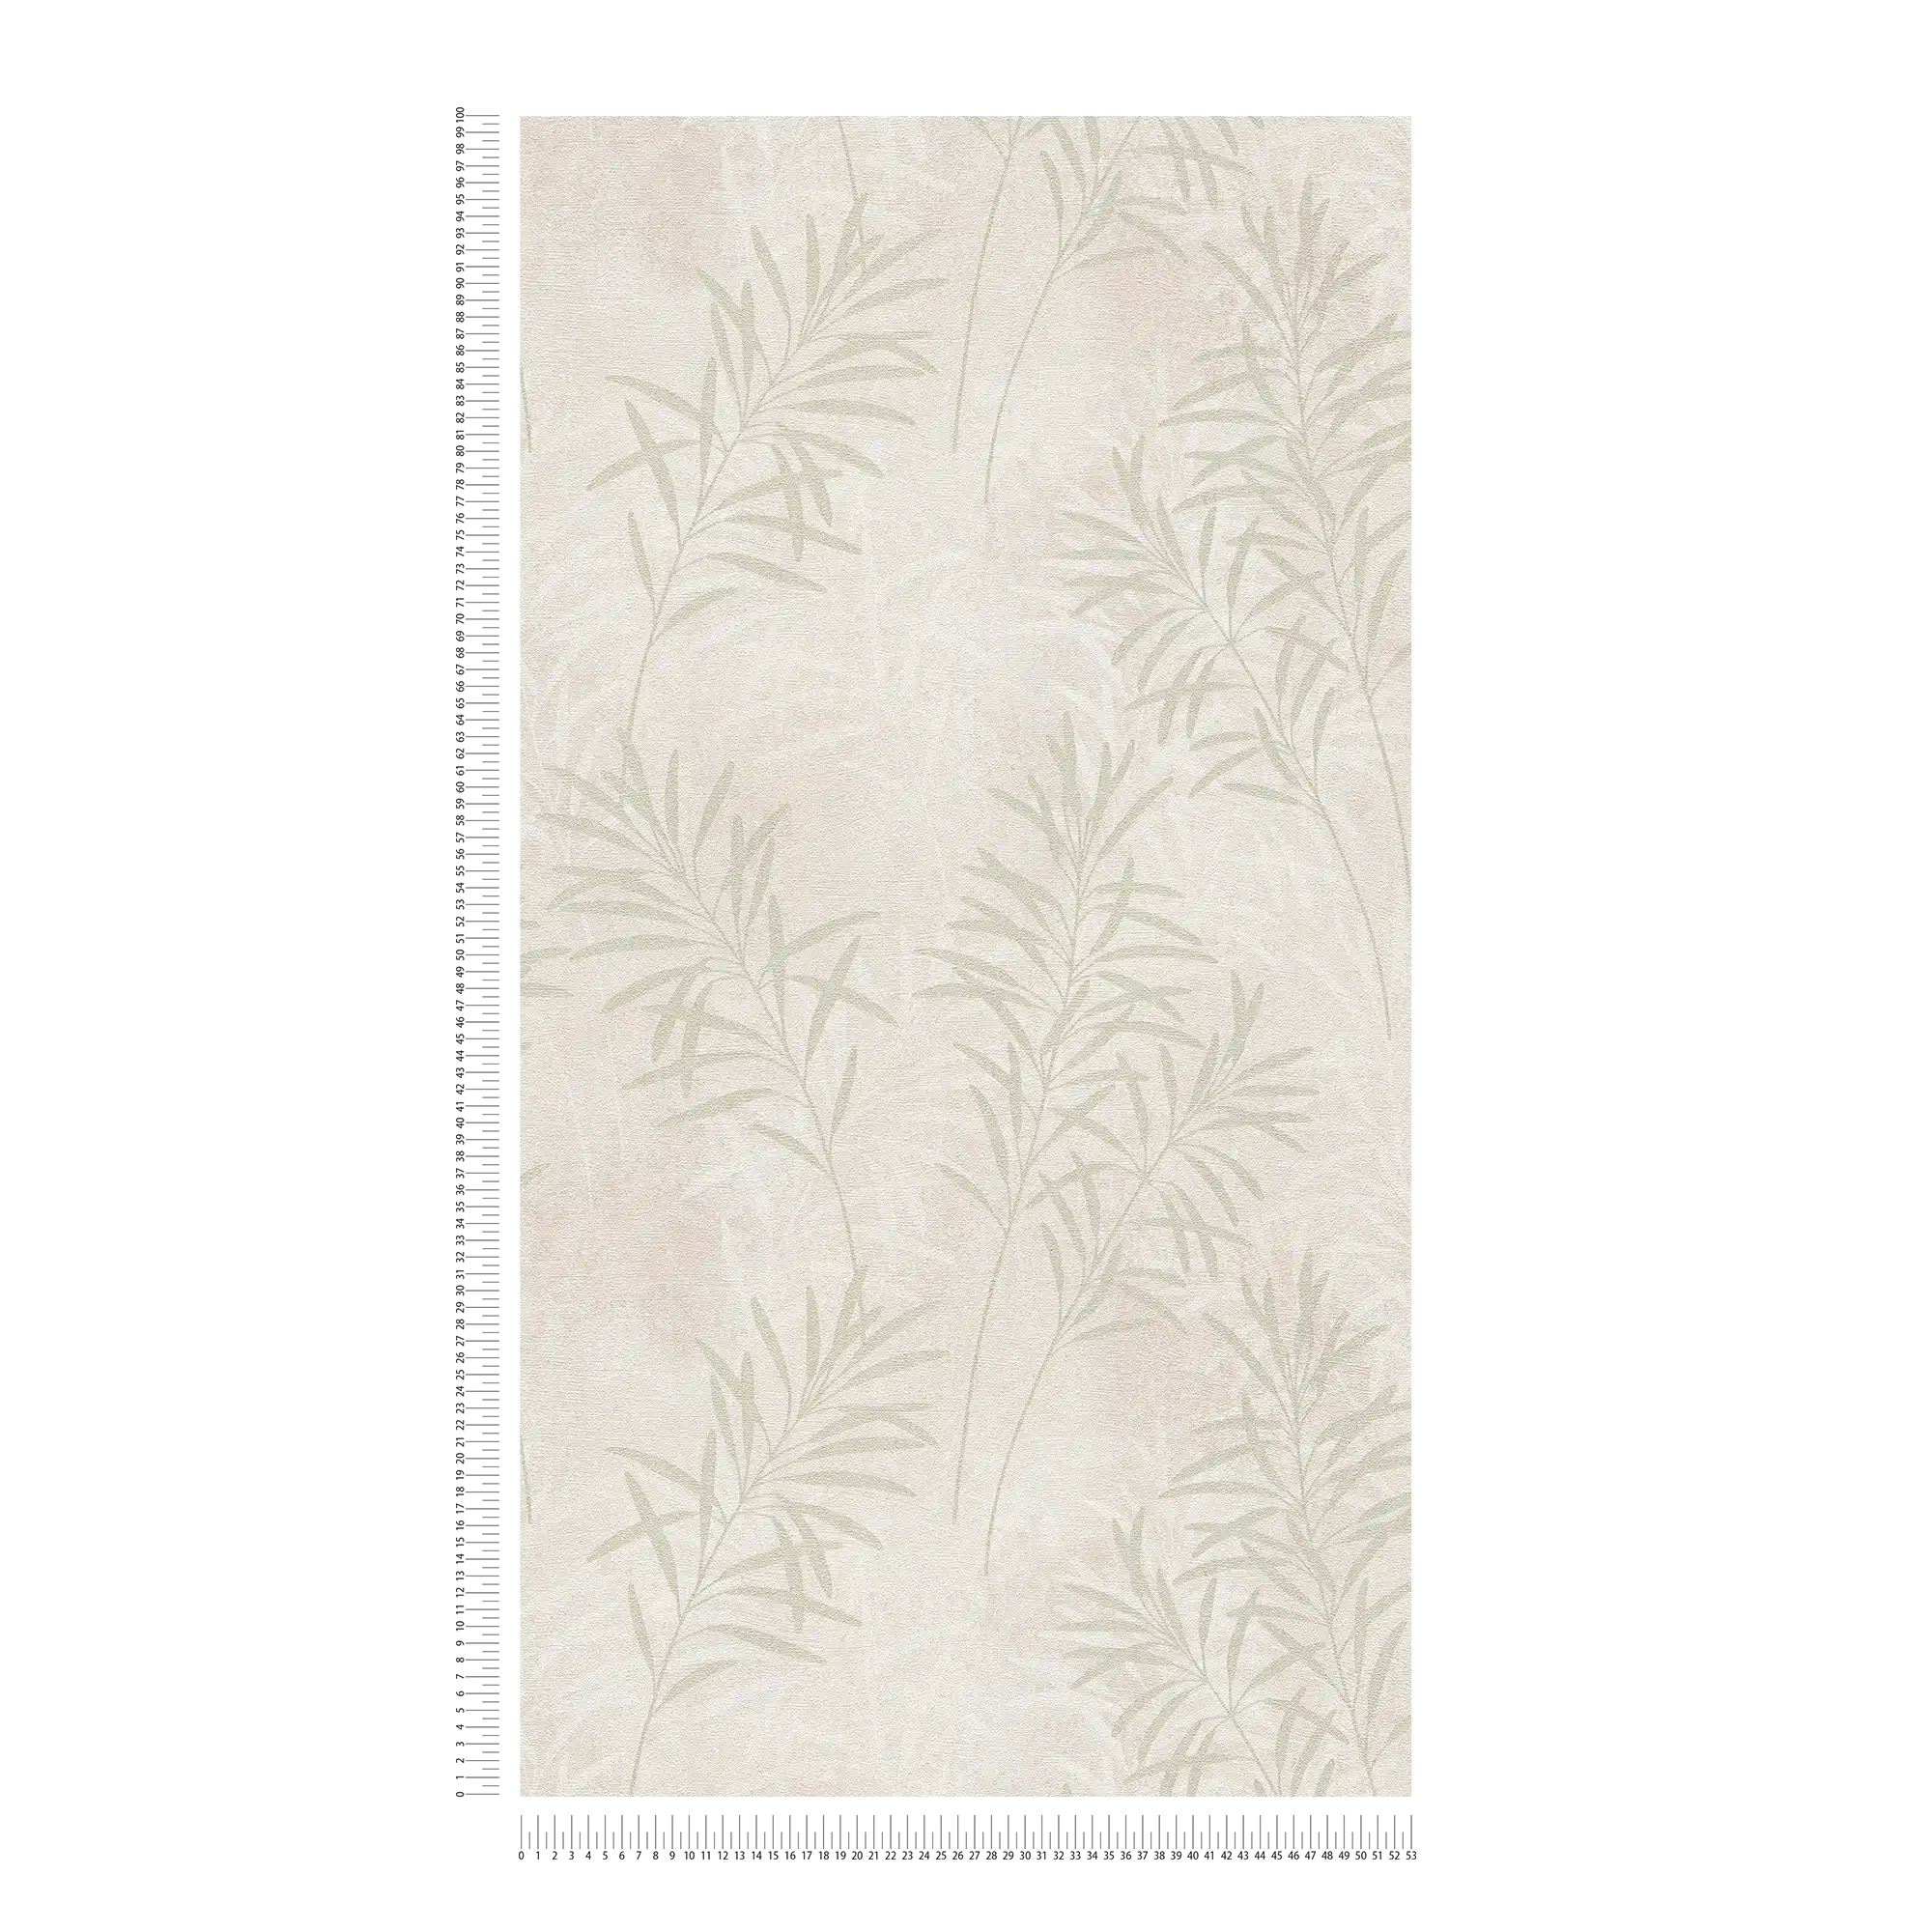             Scandinavian Style papier peint intissé avec des herbes florales - crème, vert, métallique
        